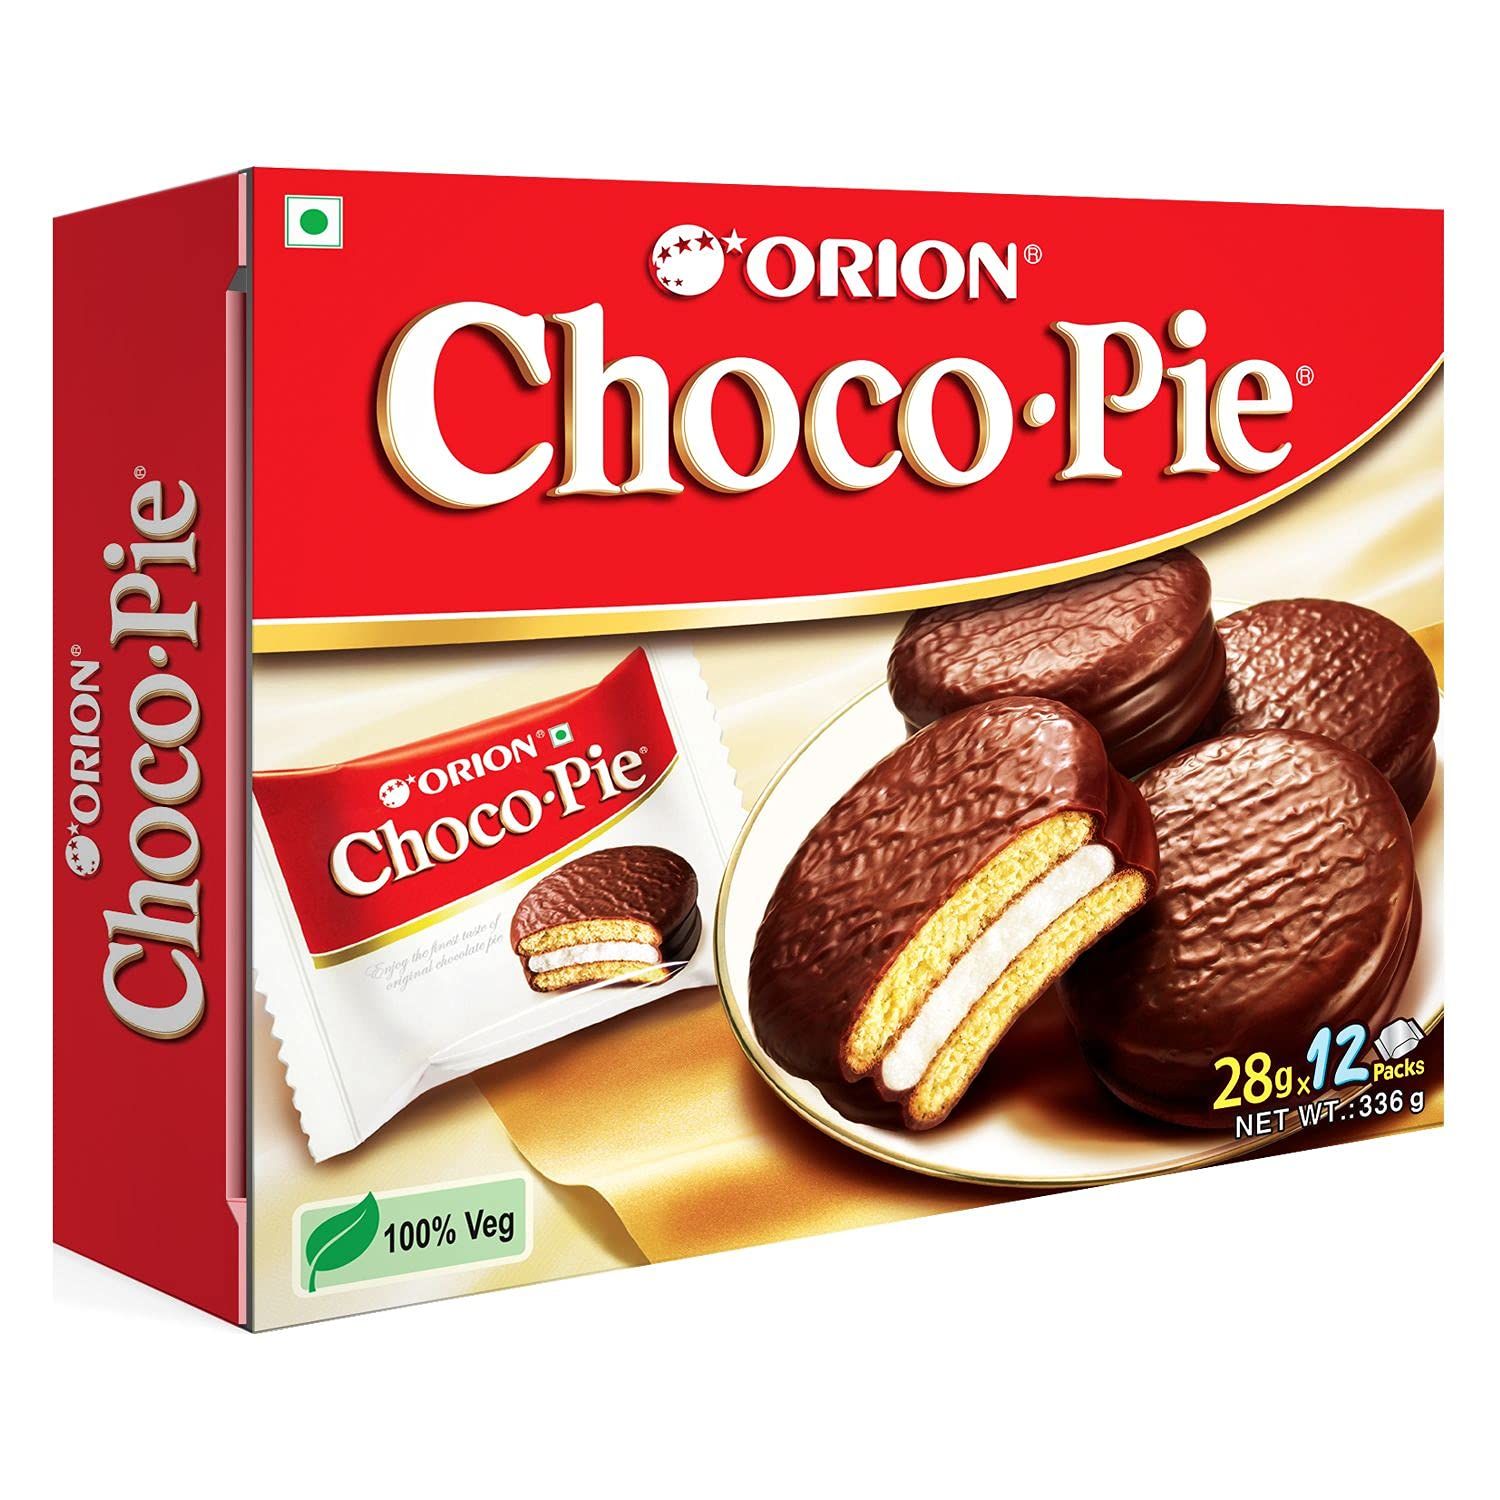 Orion Choco Pie Image